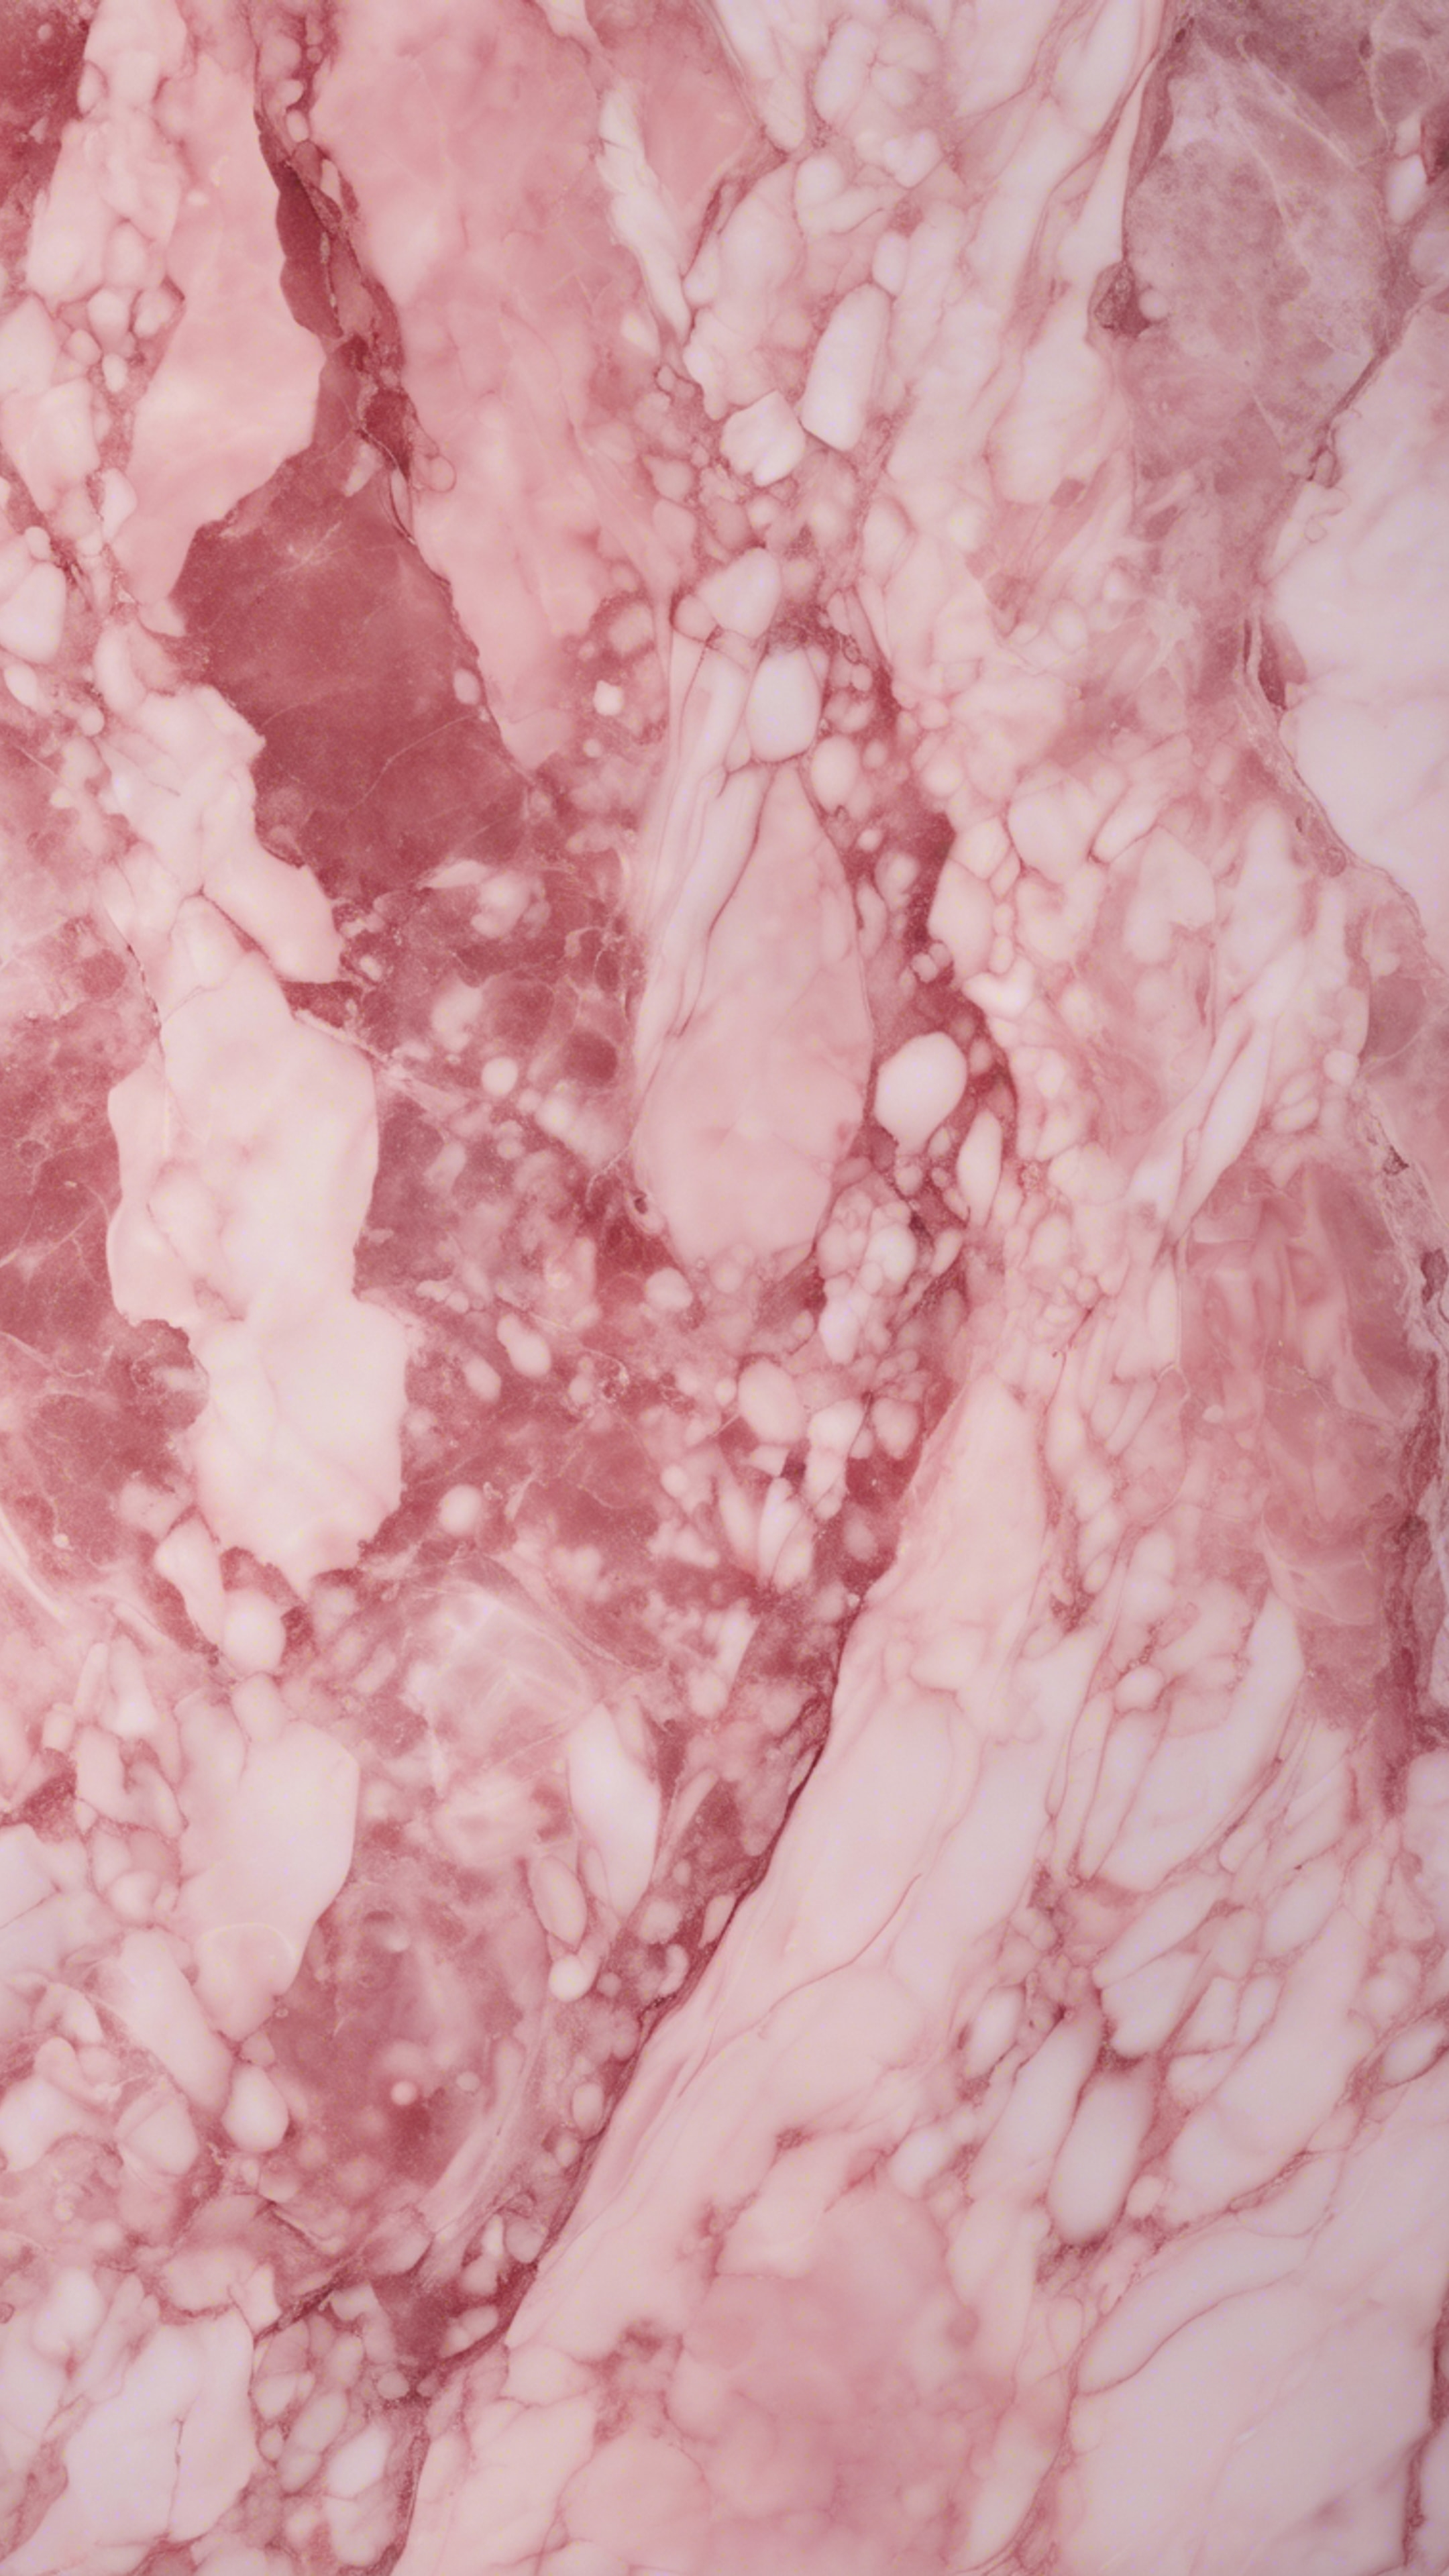 Pink marble texture viewed under faint sunlight. Tapeta[45cdb092df8543e48e23]